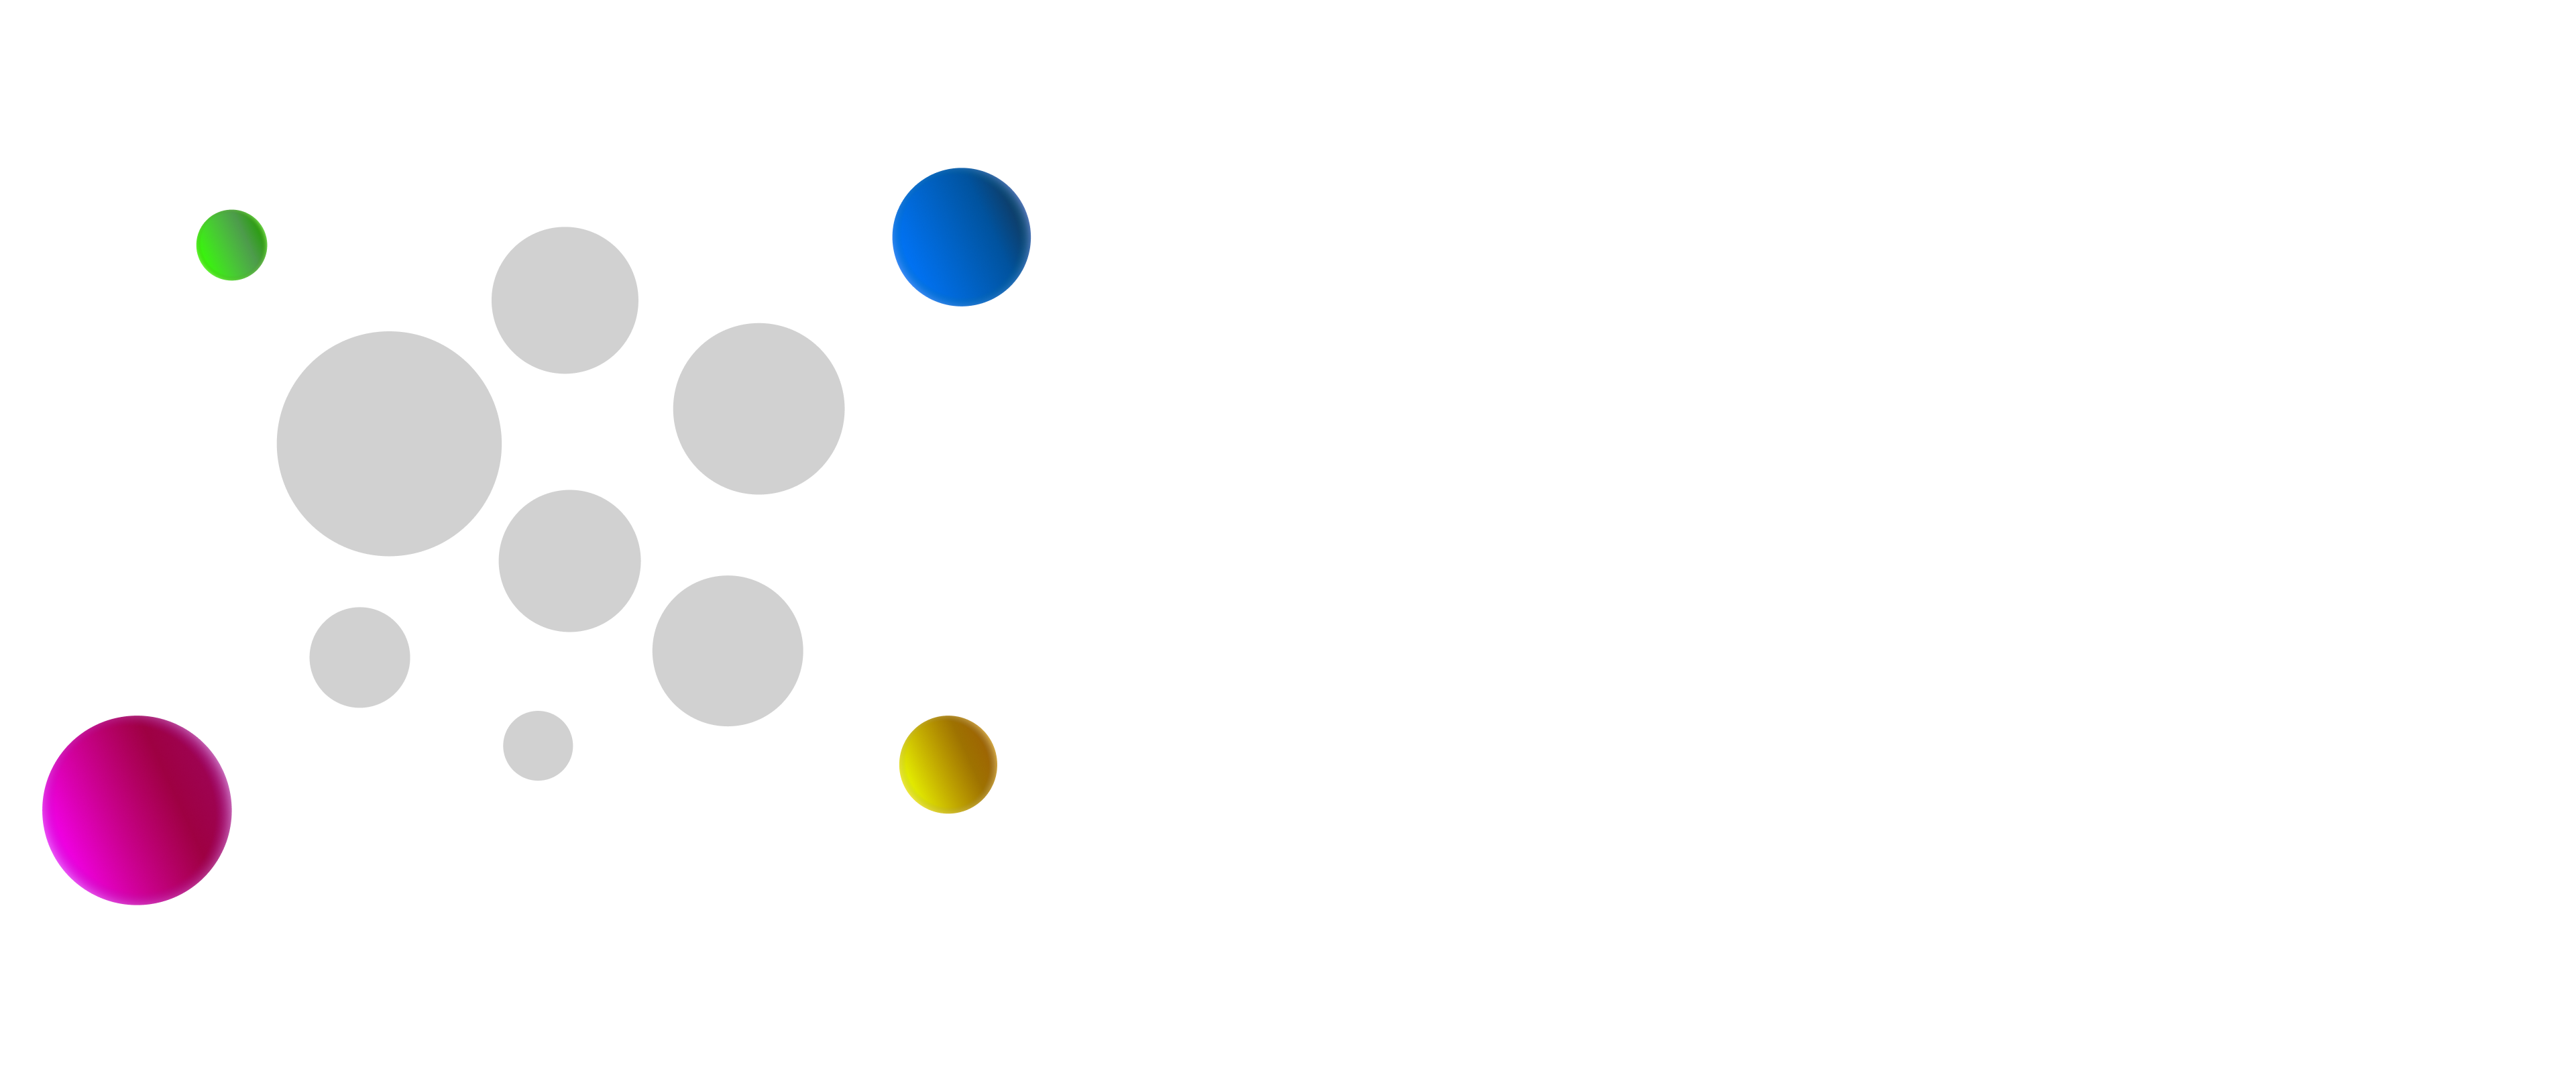 Cette image représente, de manière plus explicite, l'exclusion. Une sphère gris clair, avec des sphères plus sombres à l'intérieur, est entourée de sphères colorées. Cela représente une barrière pour les sphères colorées afin de pénétrer à l'intérieur de la sphère gris clair.